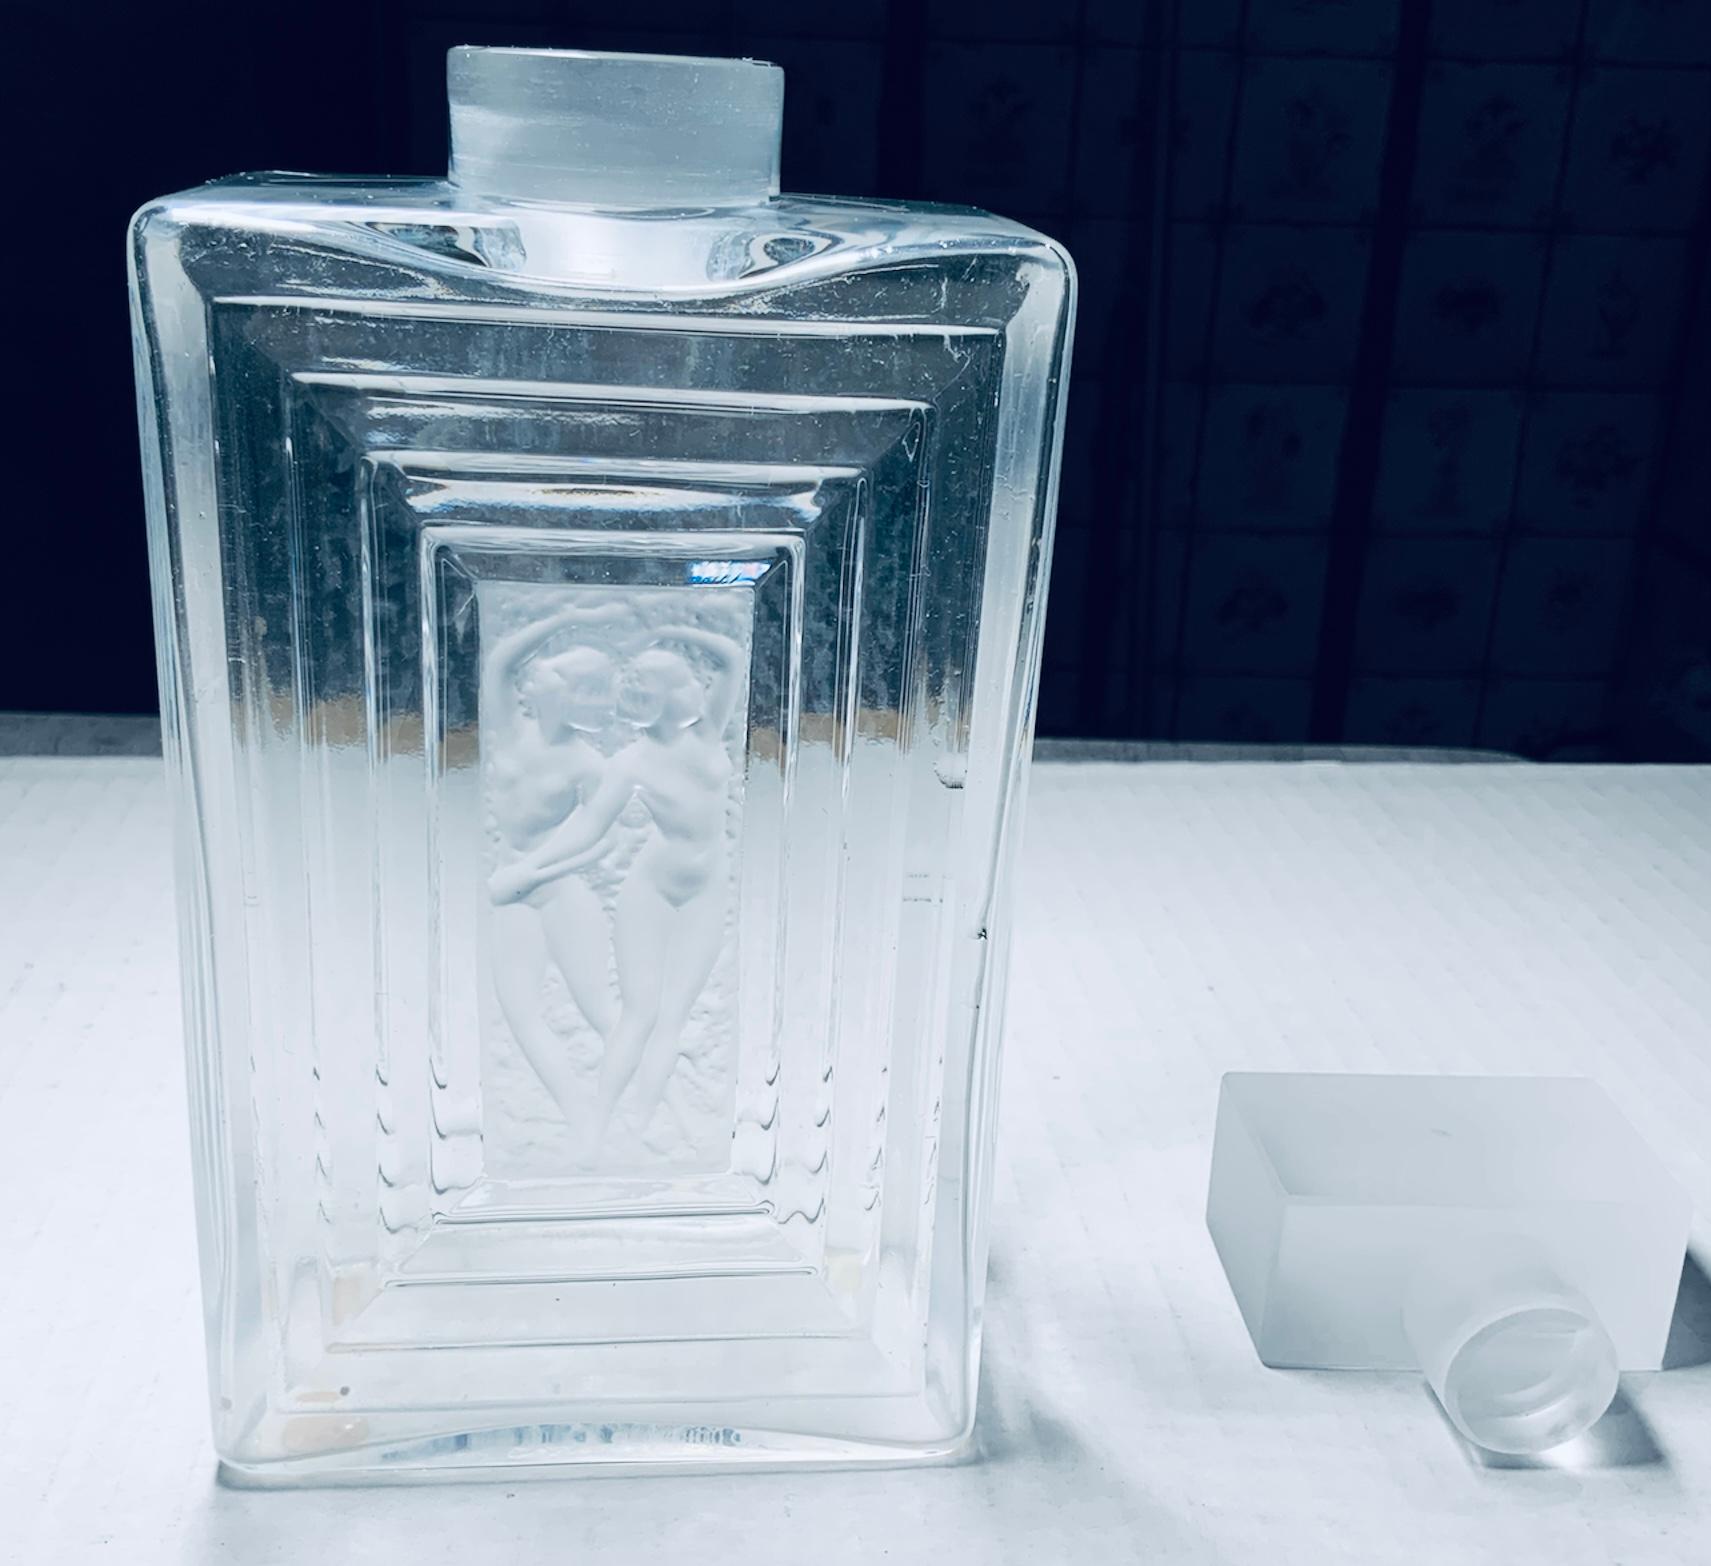 Il s'agit d'un flacon de parfum Duncan No.3 en cristal Lalique. Il s'agit d'une bouteille rectangulaire en cristal clair et dépoli qui représente deux danseuses nues à l'avant et à l'arrière, encadrées par une bordure rectangulaire plus ou moins